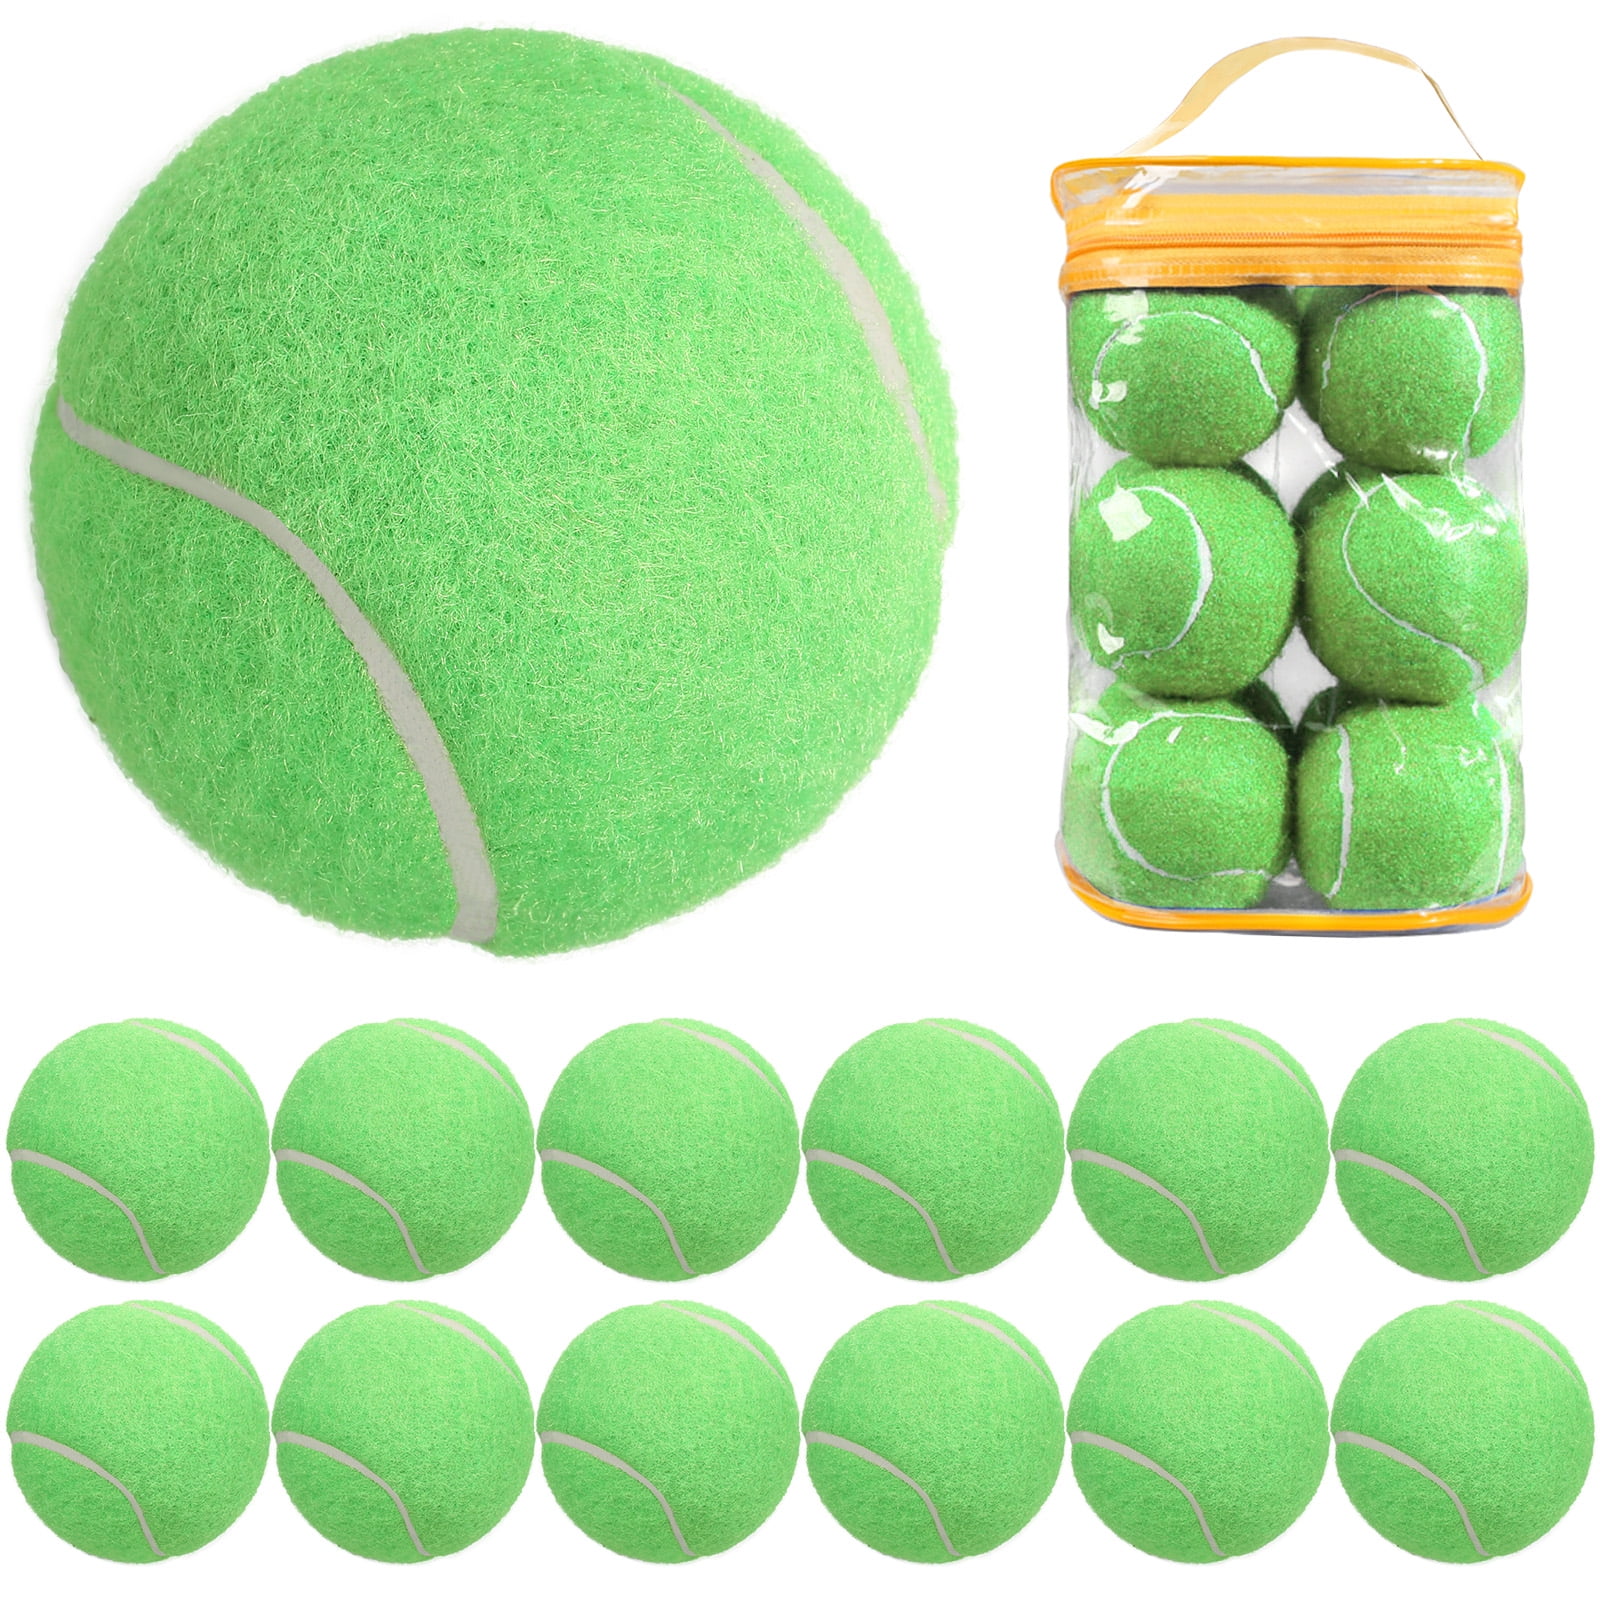 SBM tenis ball multi pack of 12 Tennis Ball